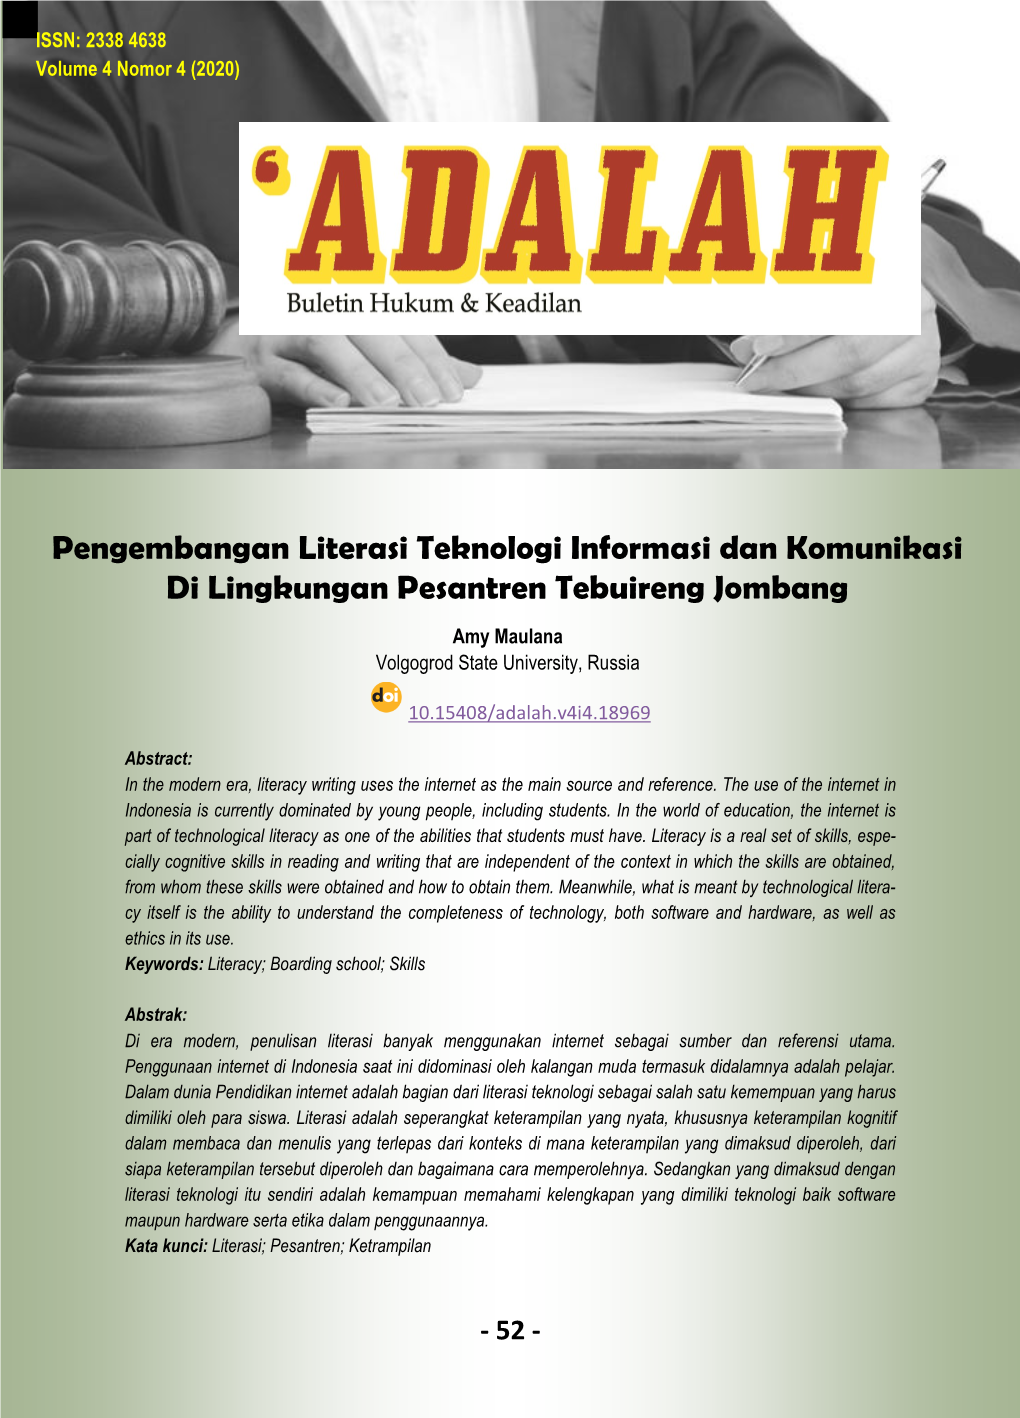 Pengembangan Literasi Teknologi Informasi Dan Komunikasi Di Lingkungan Pesantren Tebuireng Jombang